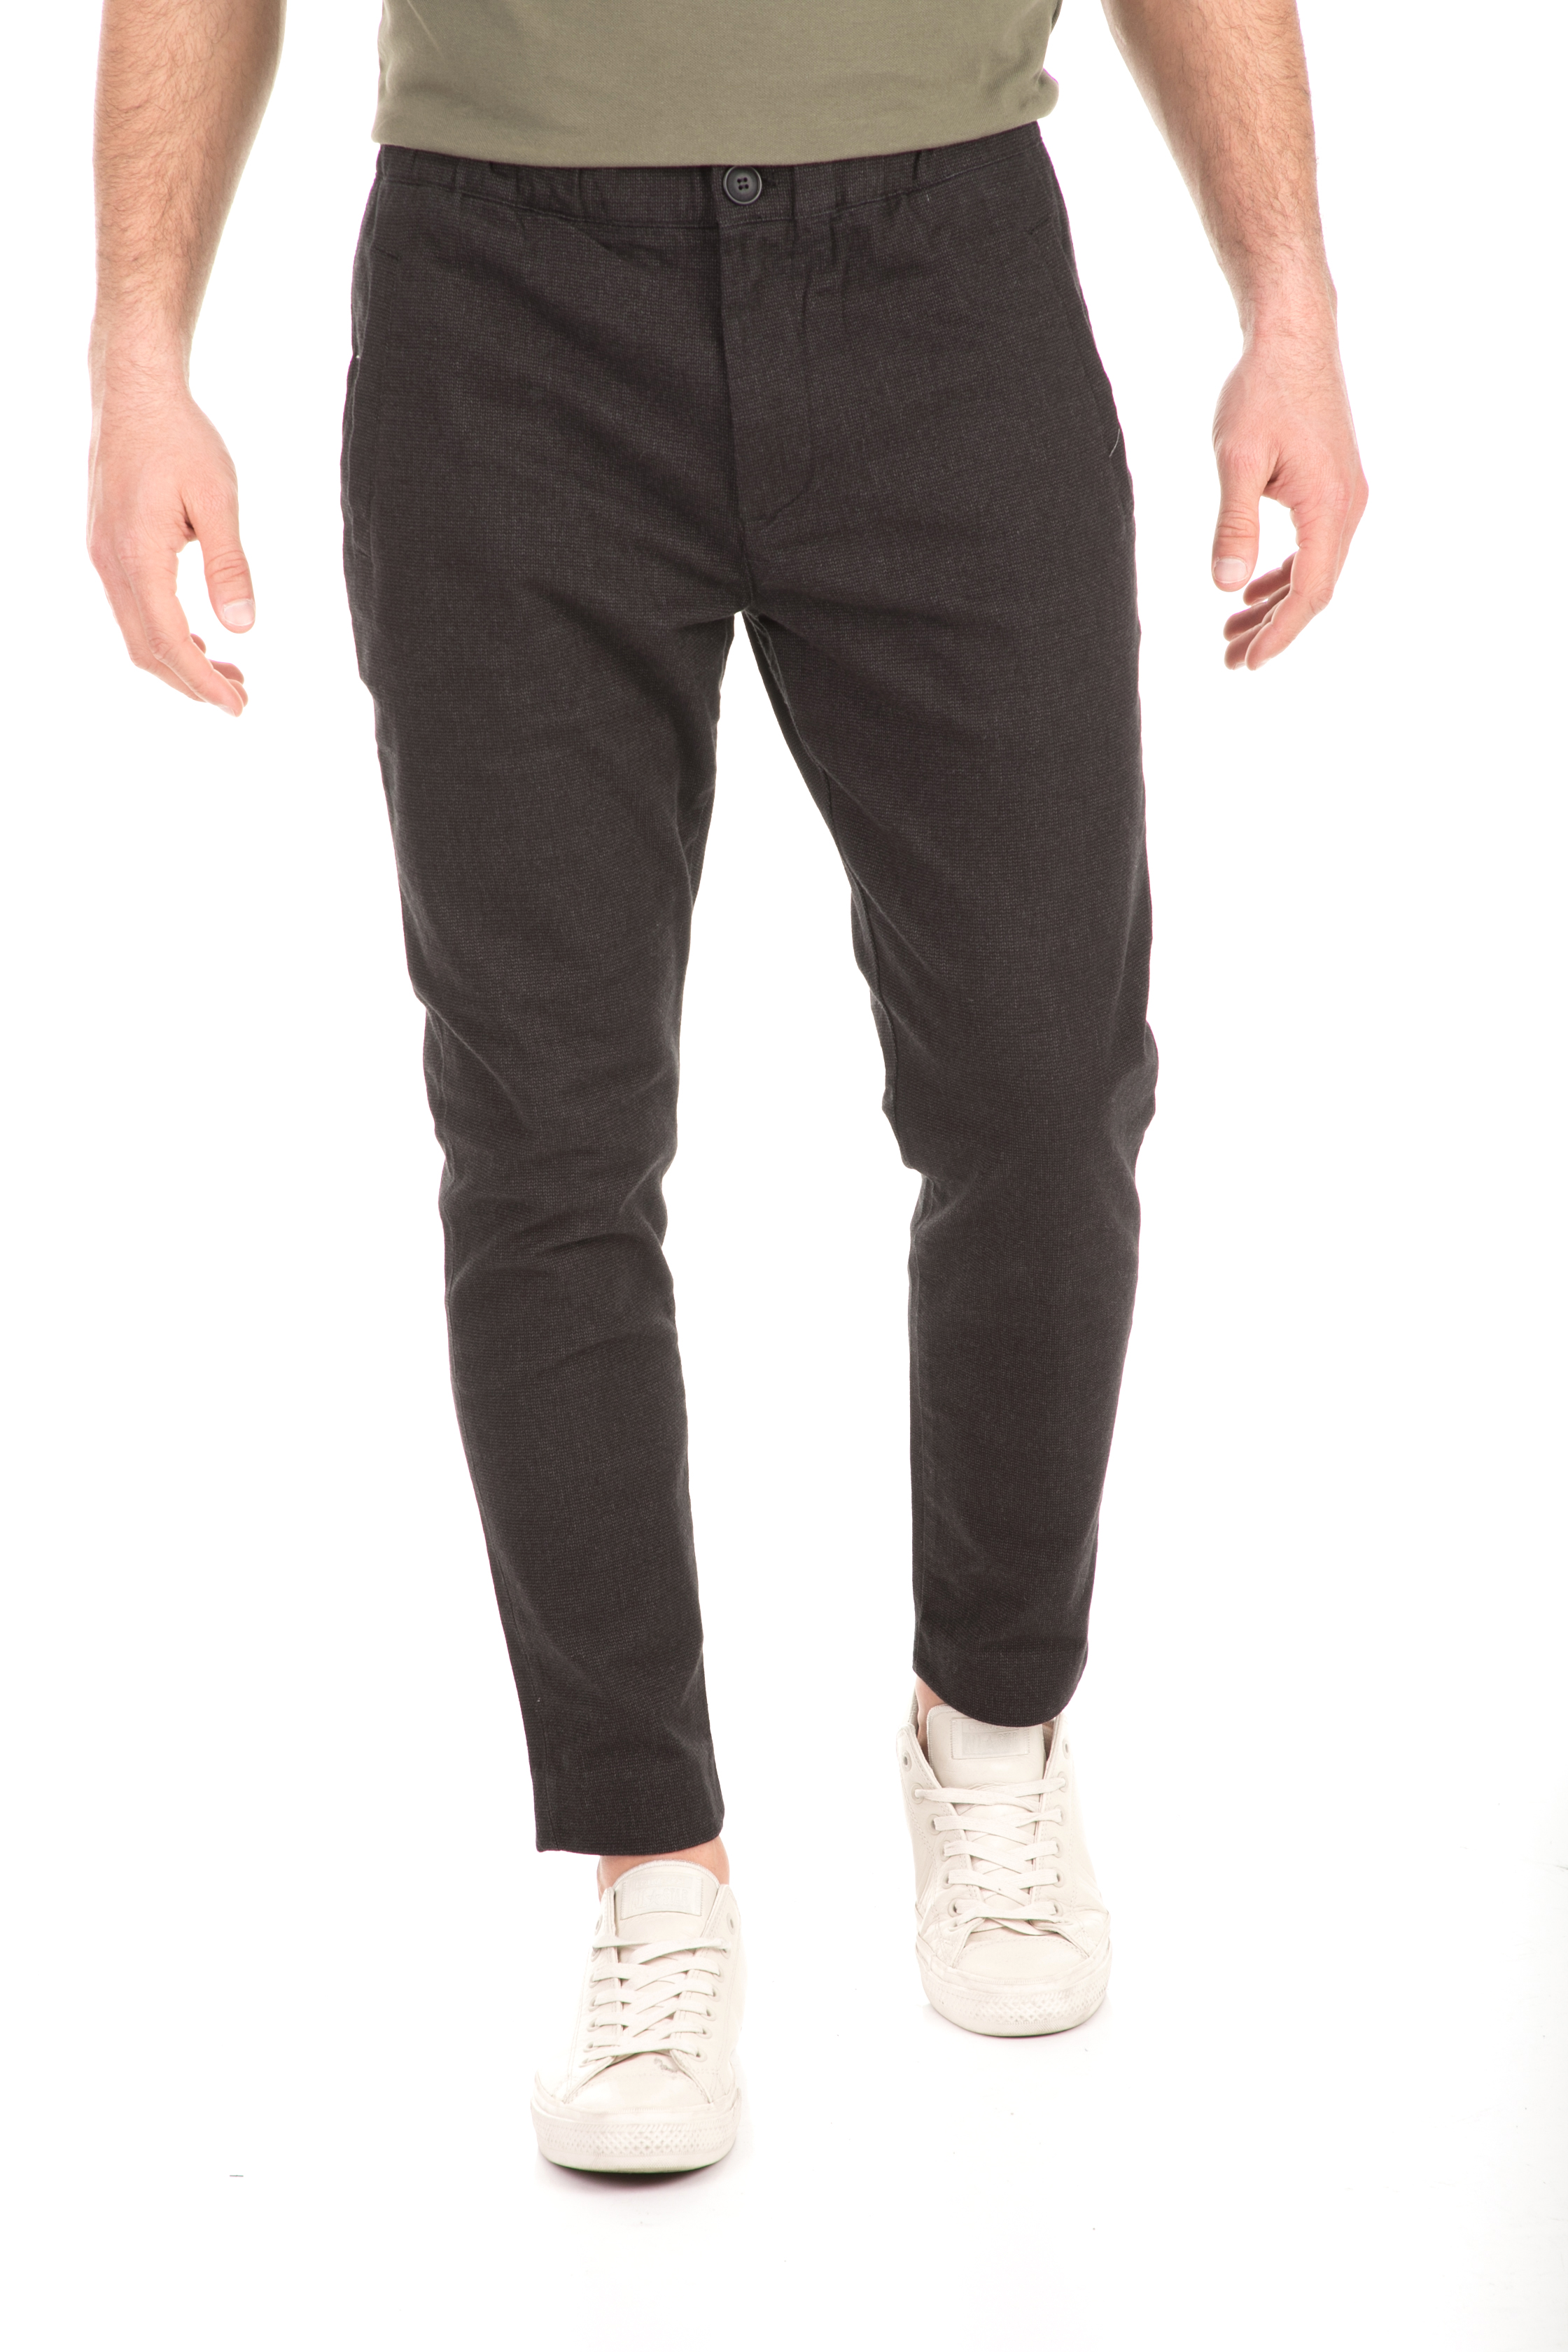 Ανδρικά/Ρούχα/Παντελόνια/Chinos SSEINSE - Ανδρικό παντελόνι SSEINSE μαύρο